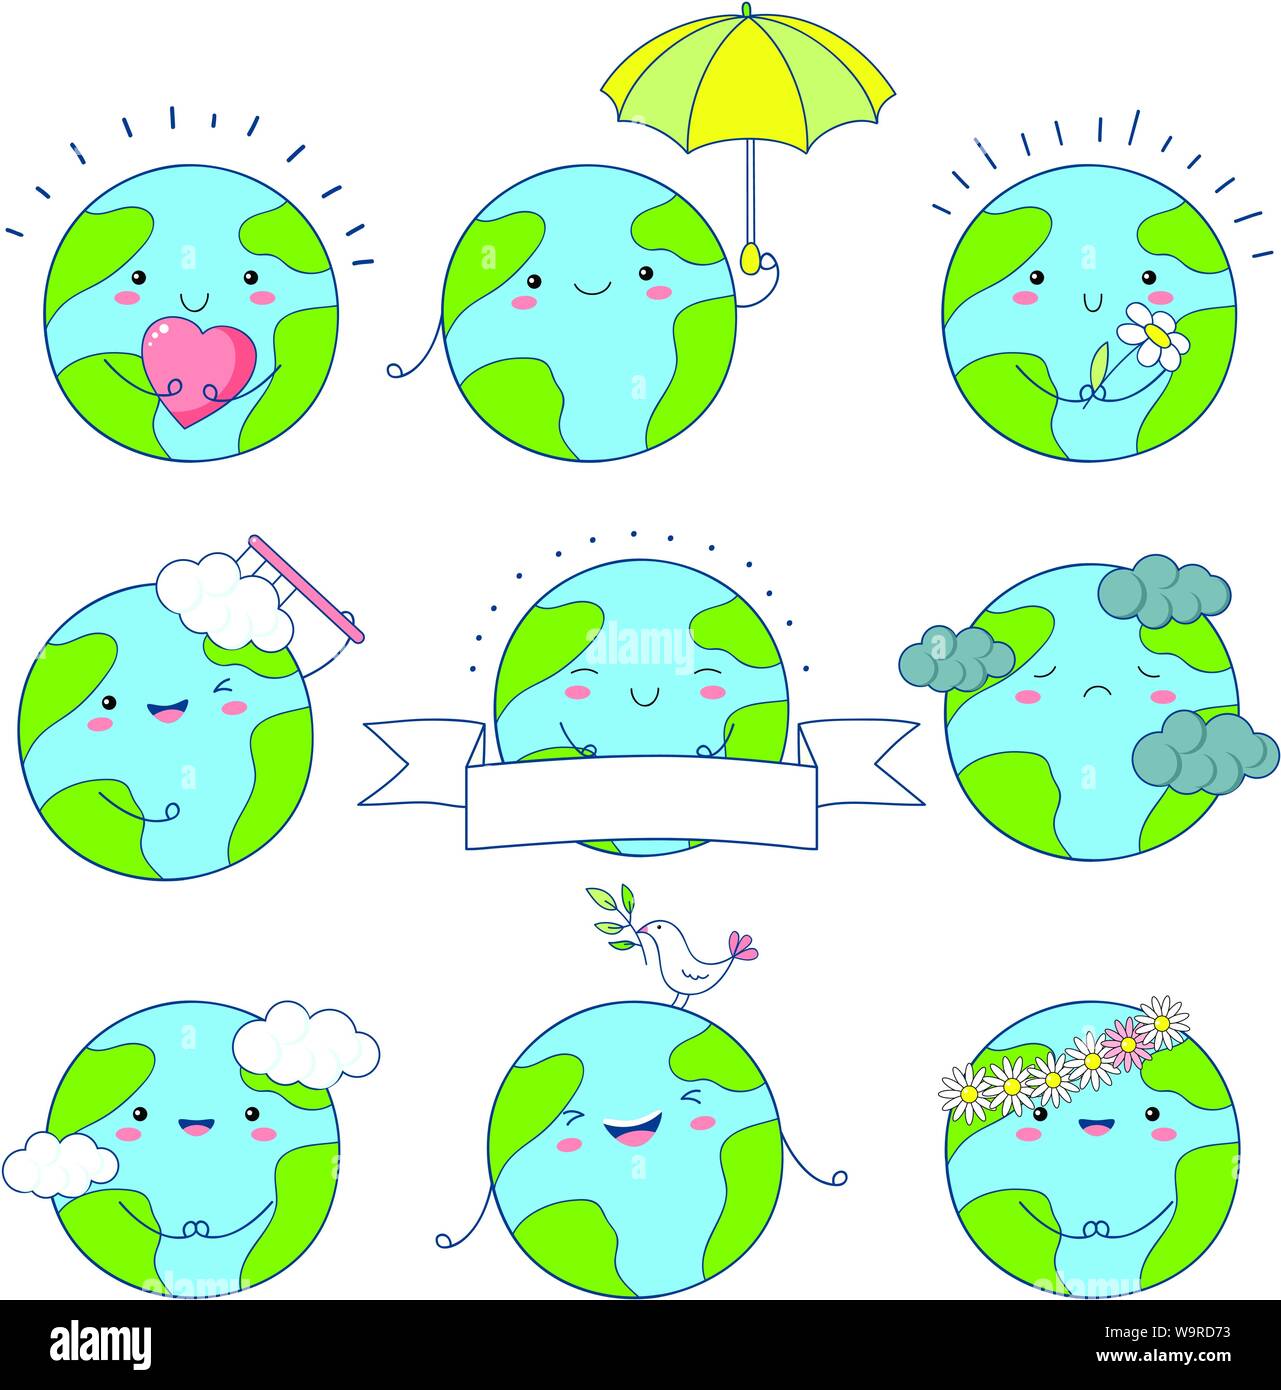 Ensemble d'icônes de la Terre cute kawaii style avec sourire et joues roses. Planètes avec fleur, coeur, parapluie. Spe8 Illustration de Vecteur